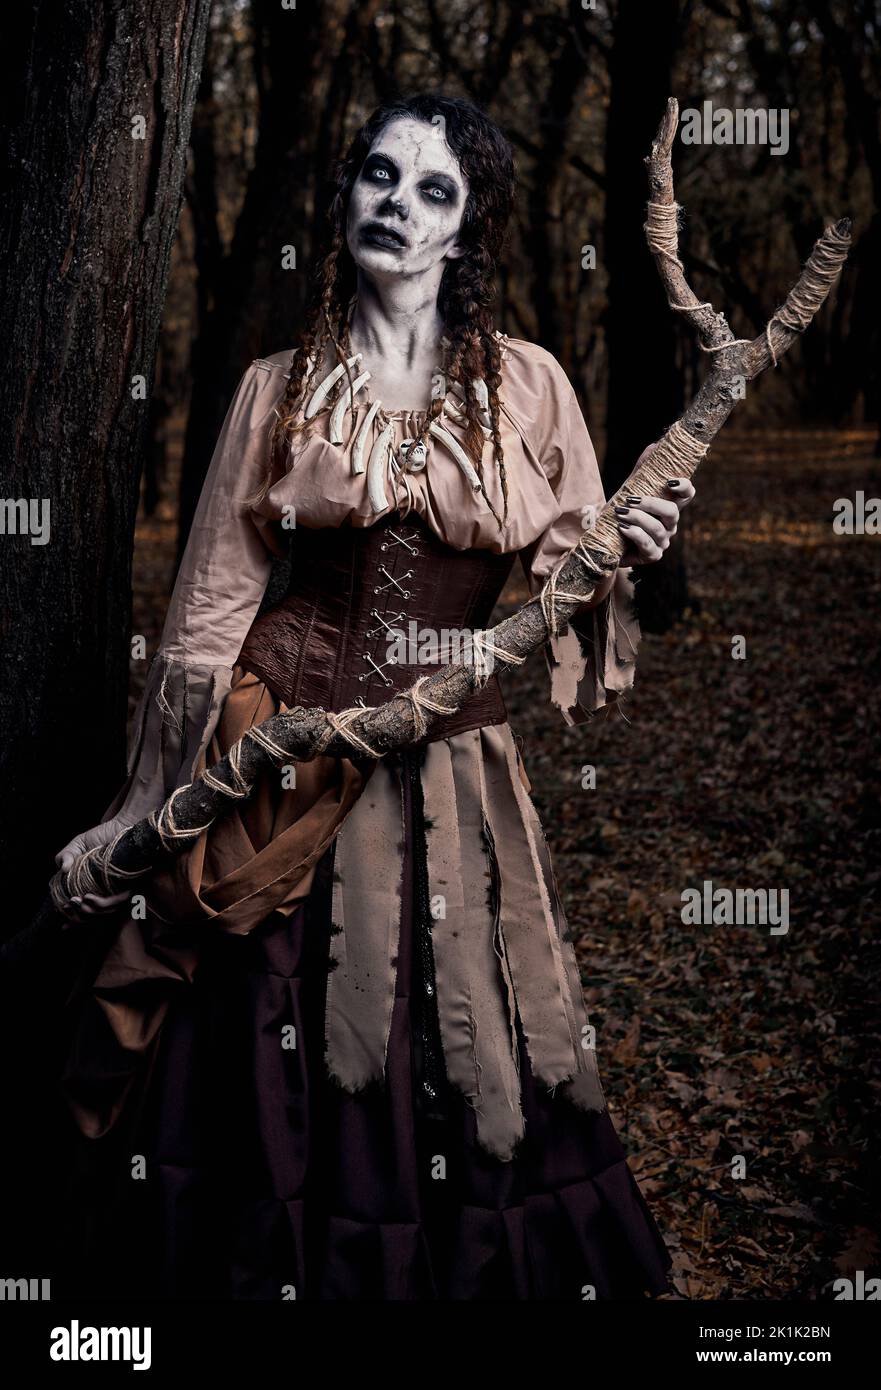 Tema di Halloween (Samhain): Brutto terribile voodoo strega con il personale. Ritratto della malvagia hag nella foresta scura. Donna zombie (non morta) Foto Stock